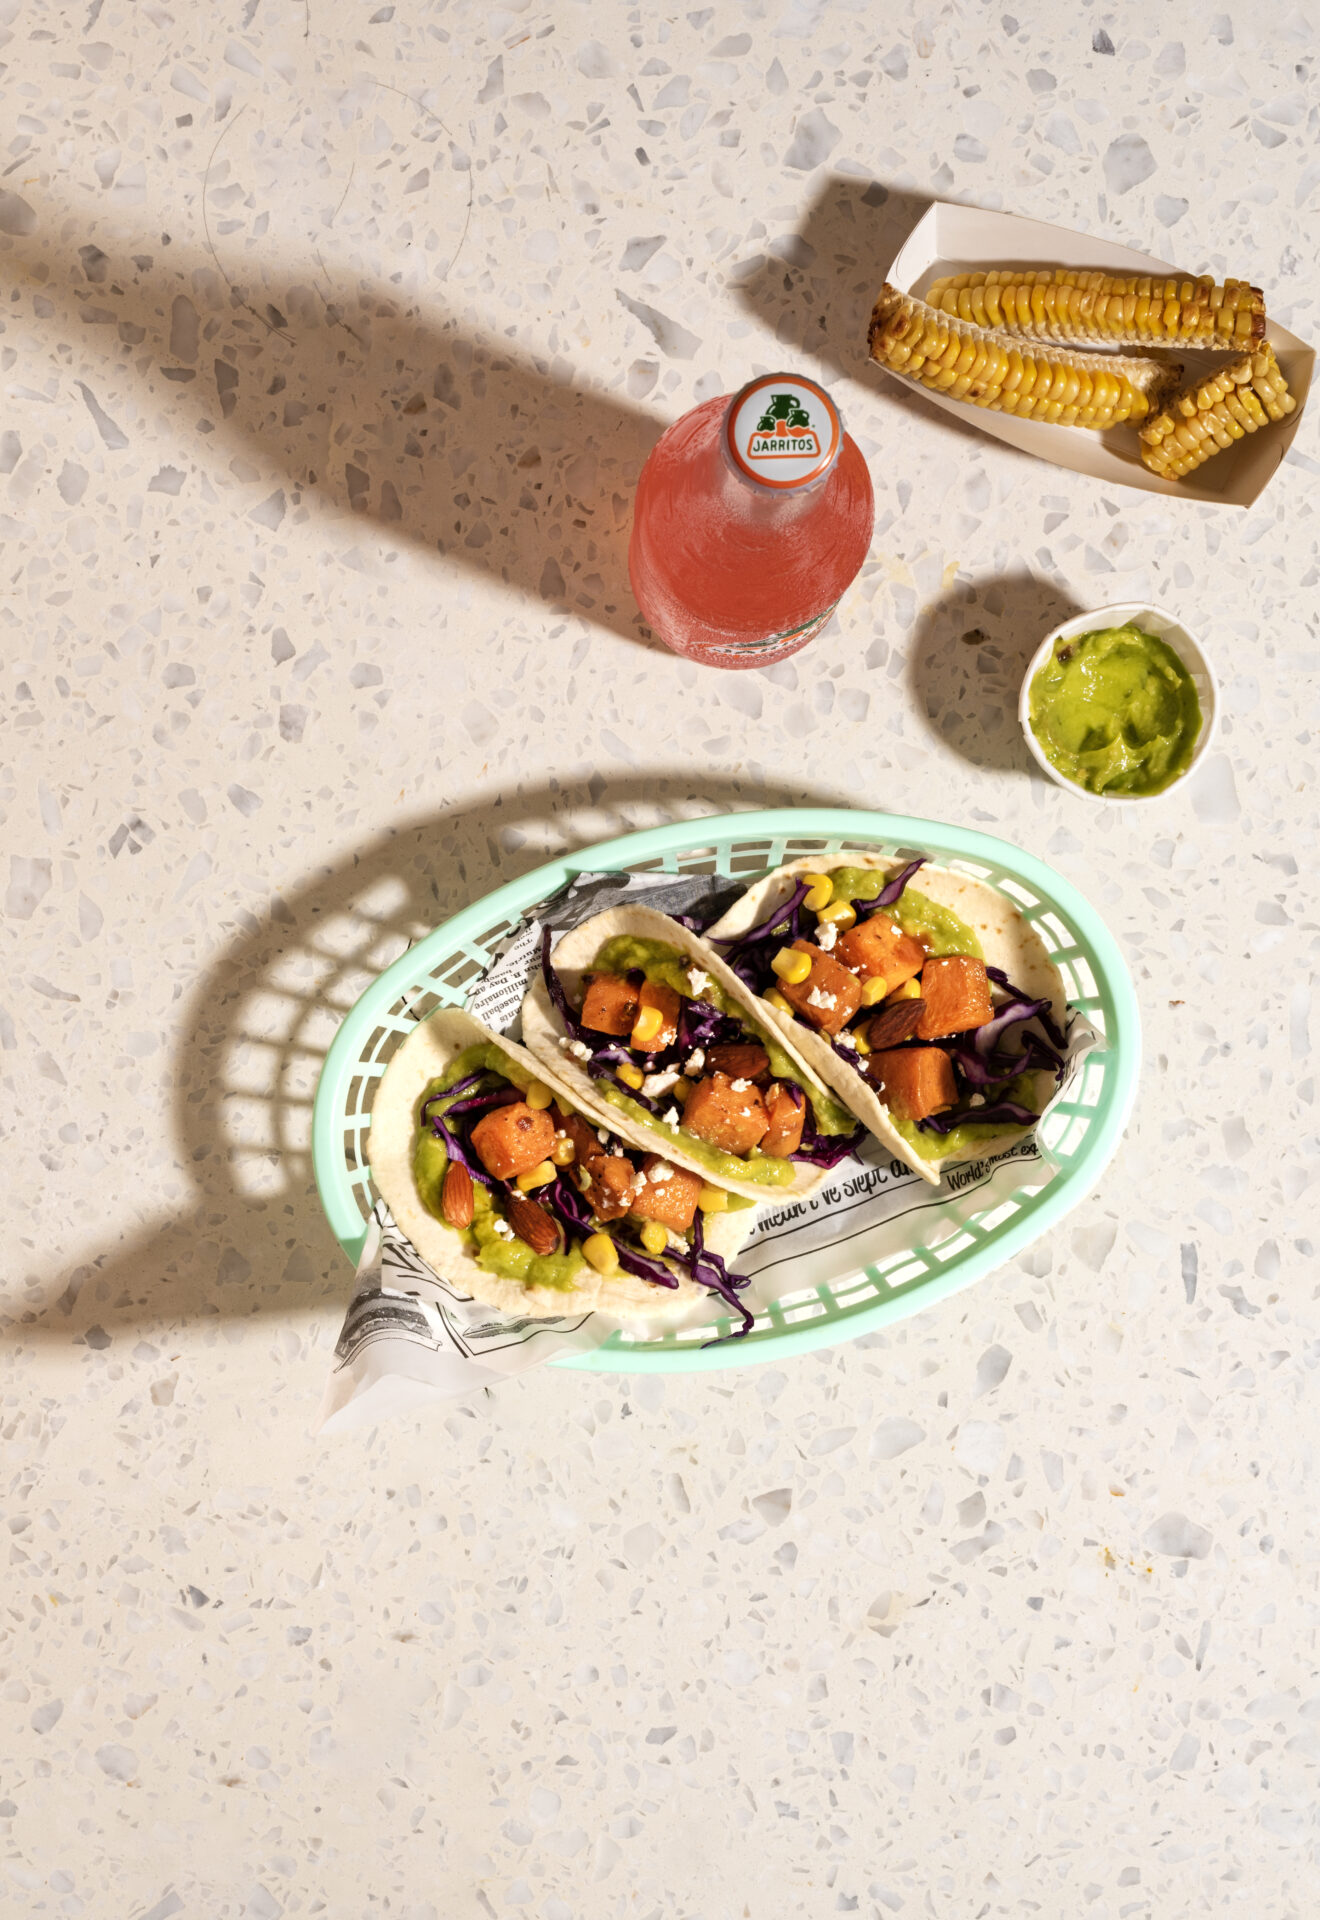 Mandje met taco's, cornribs en een soda on the side